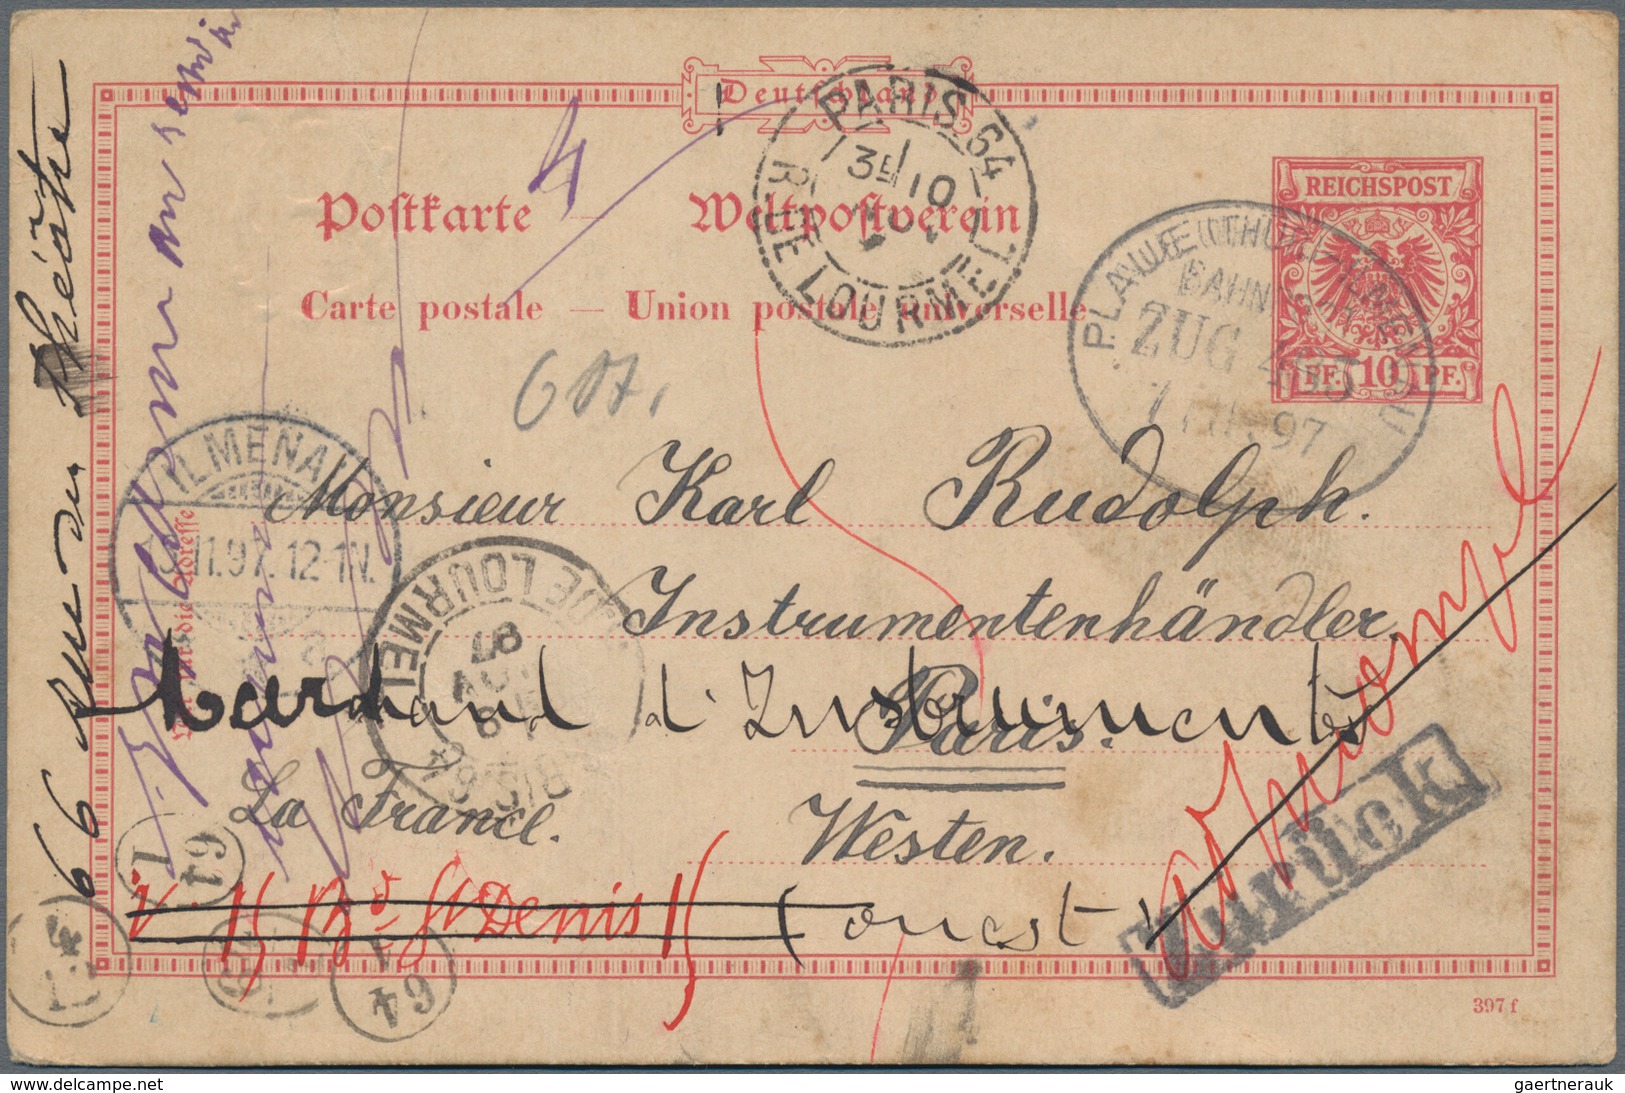 Deutsches Reich - Ganzsachen: 1872/1945 riesiger Posten von etlichen Tausend gebrauchten und ungebra